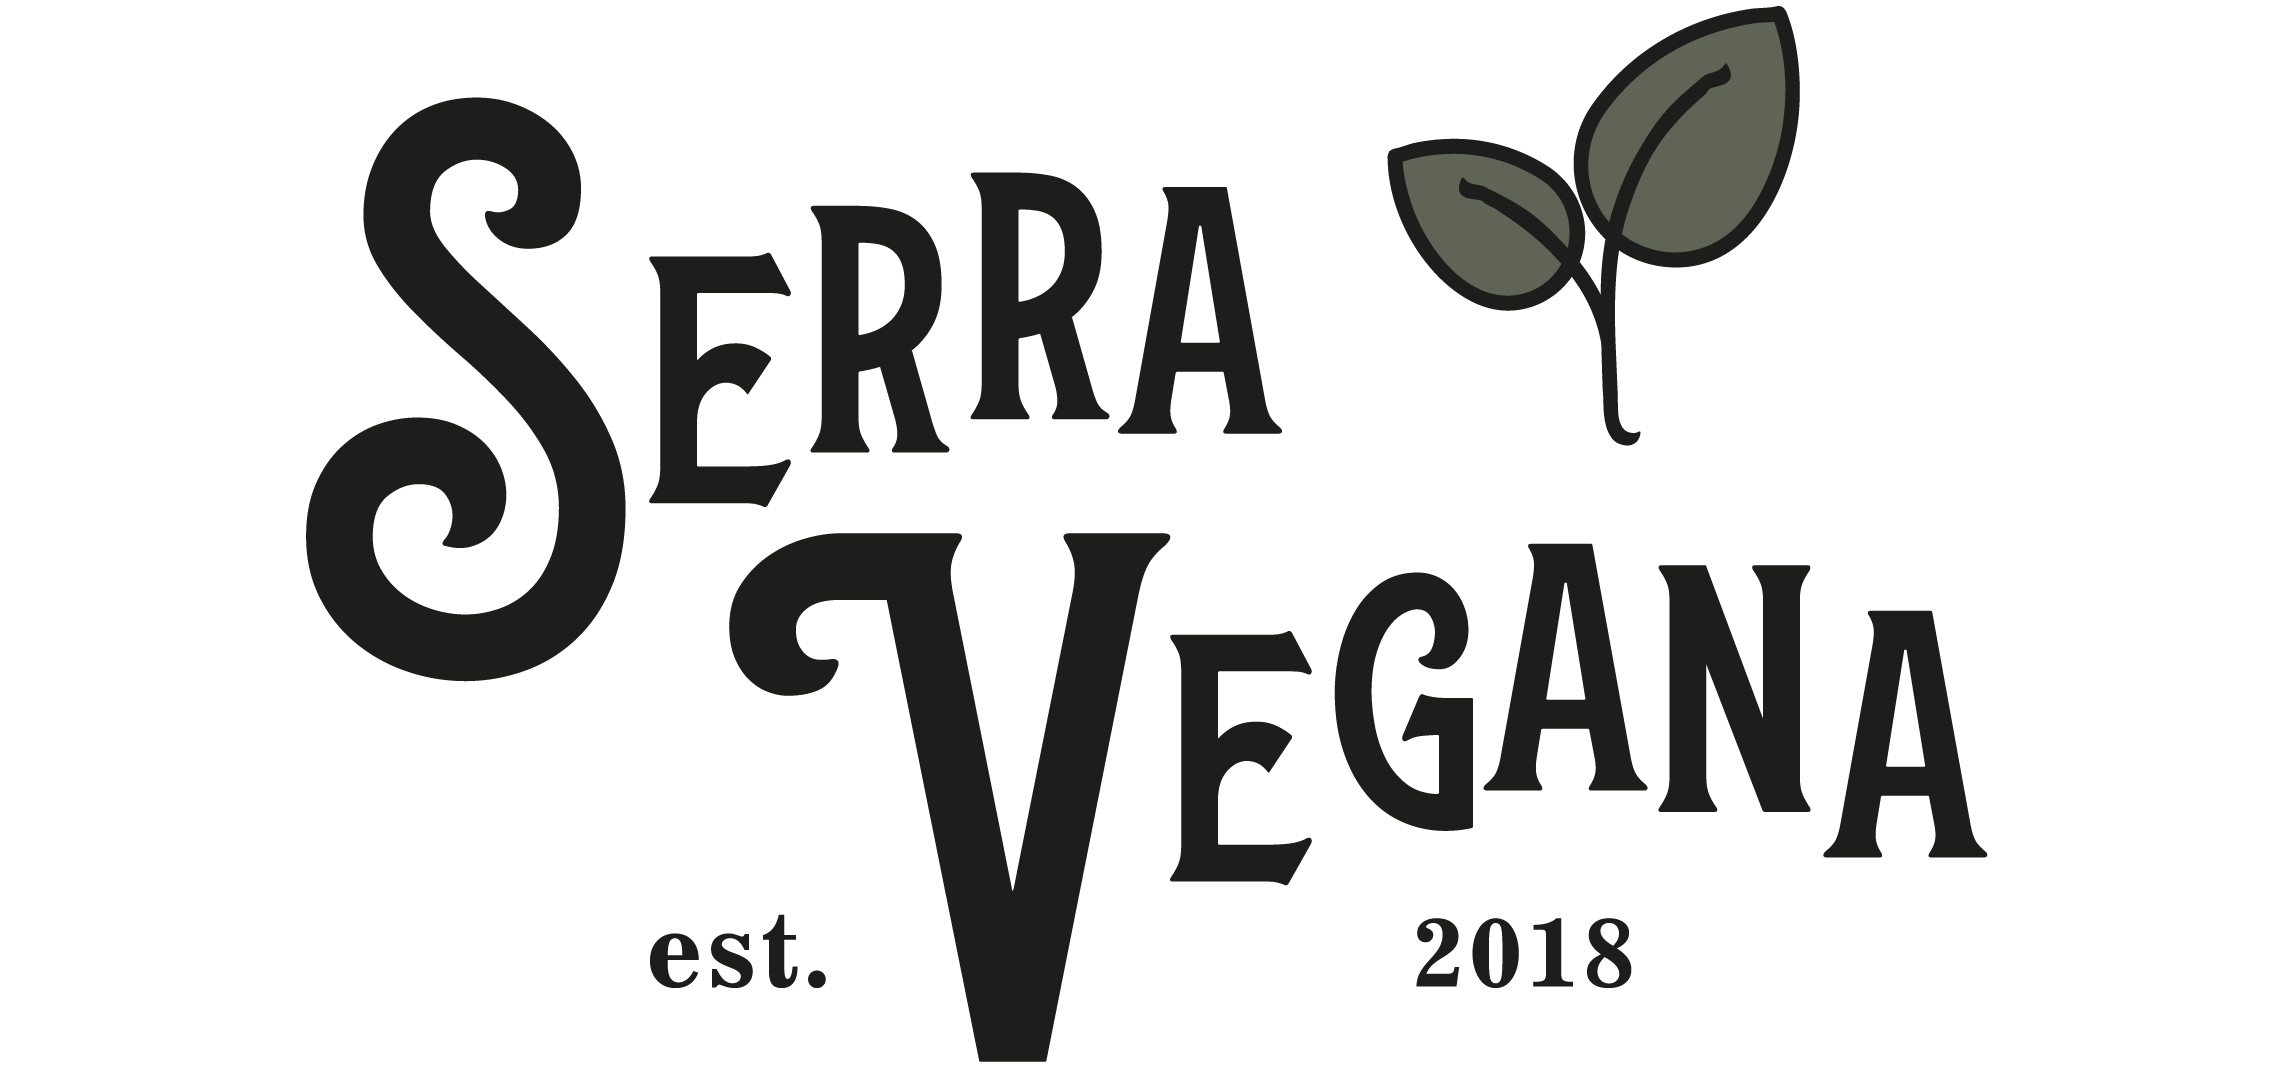 Serra Vegana